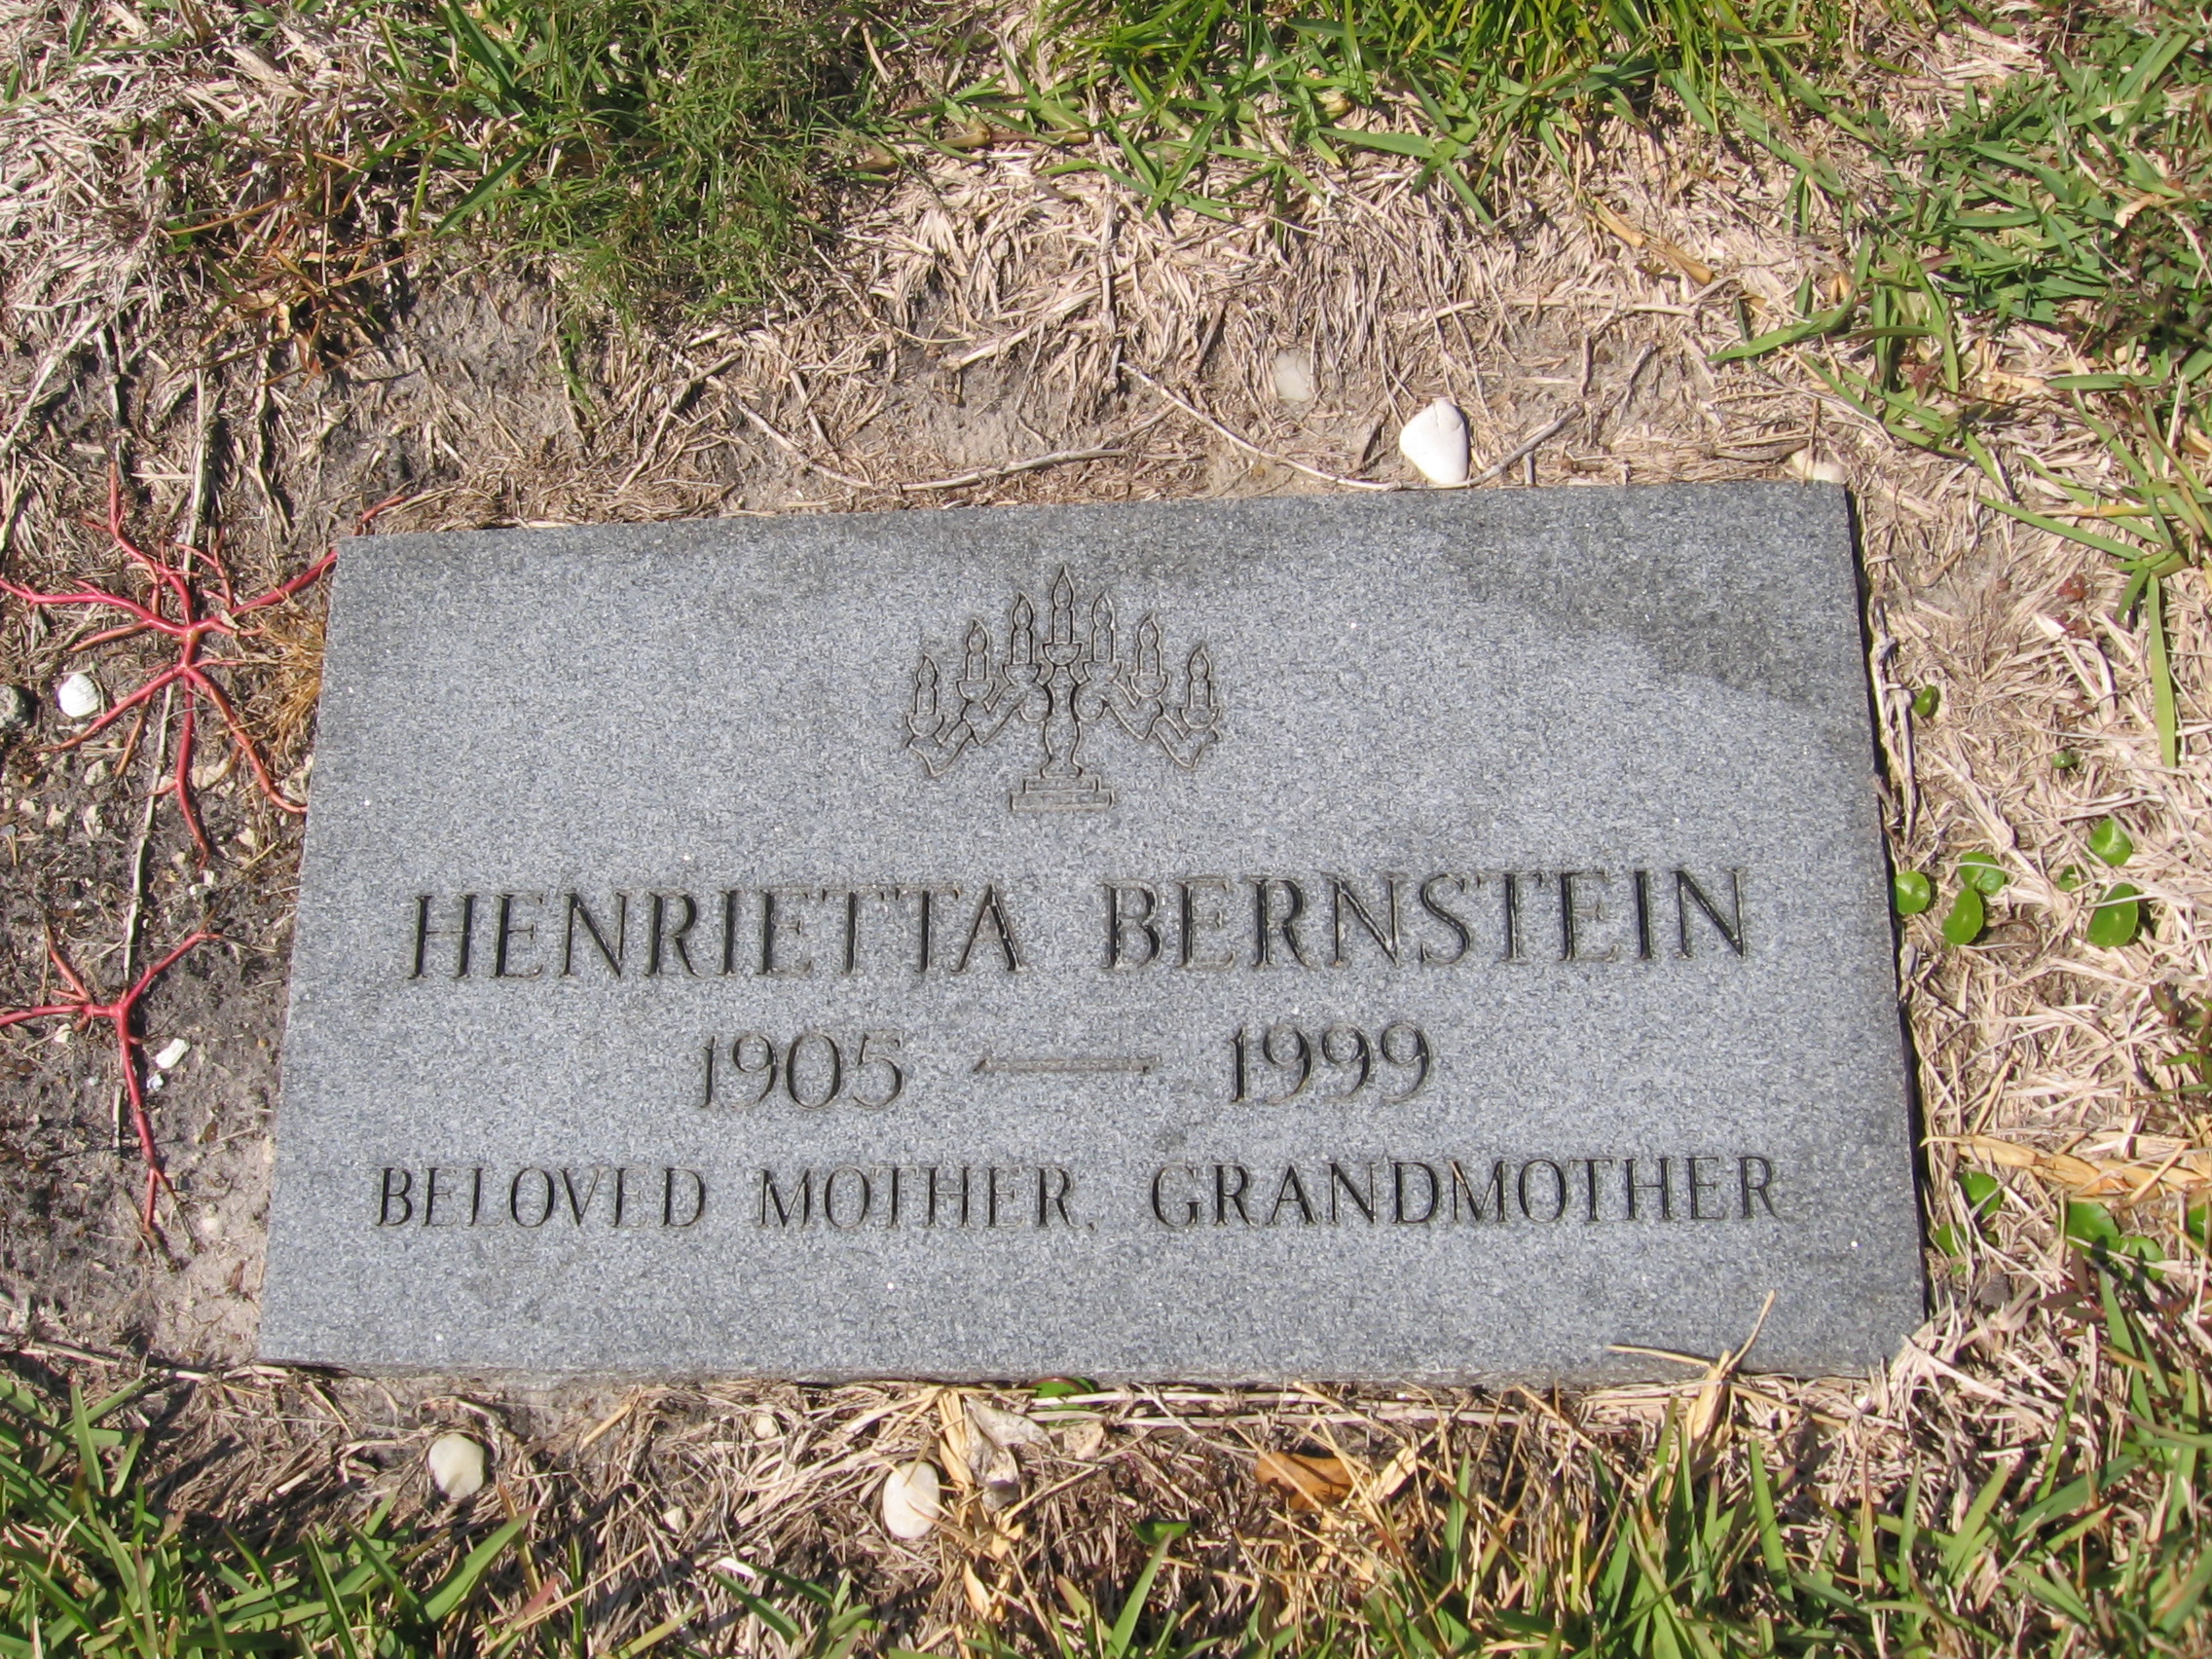 Henrietta Bernstein